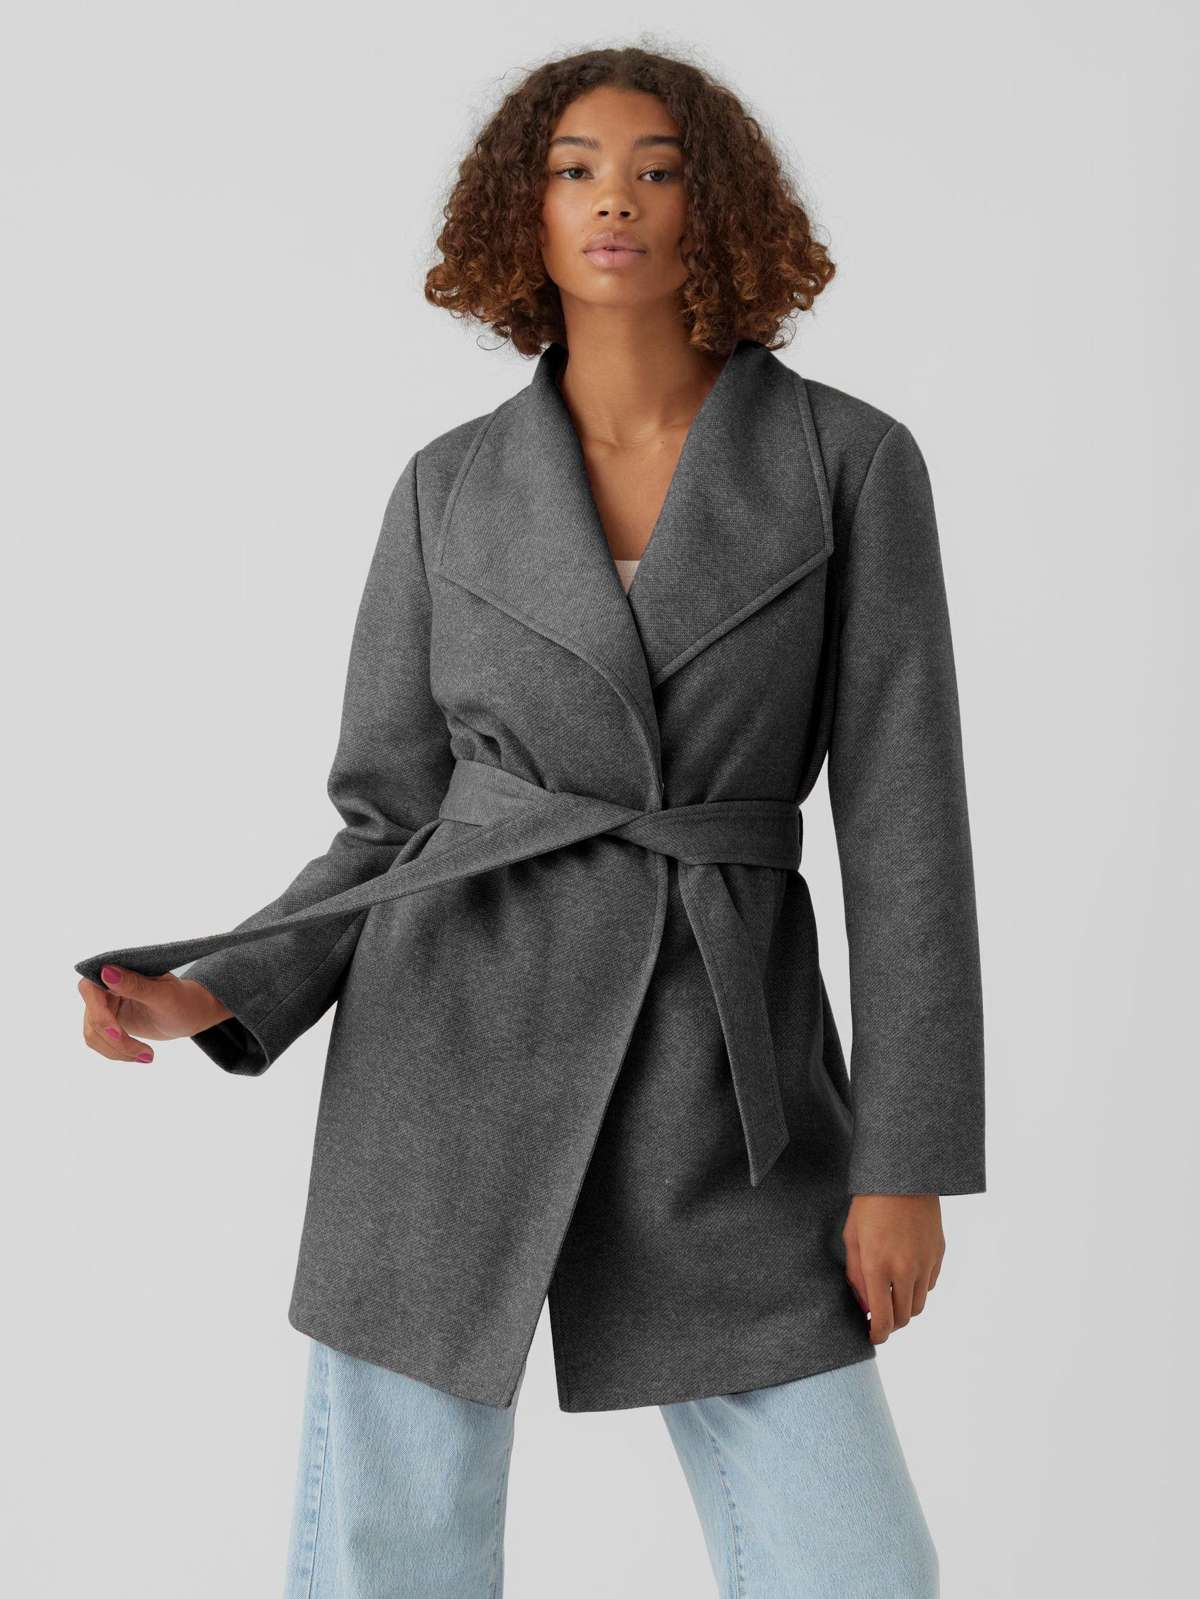 Короткое пальто Элегантное полупальто с завязывающимся поясом Повседневная зимняя куртка 6765 серого цвета